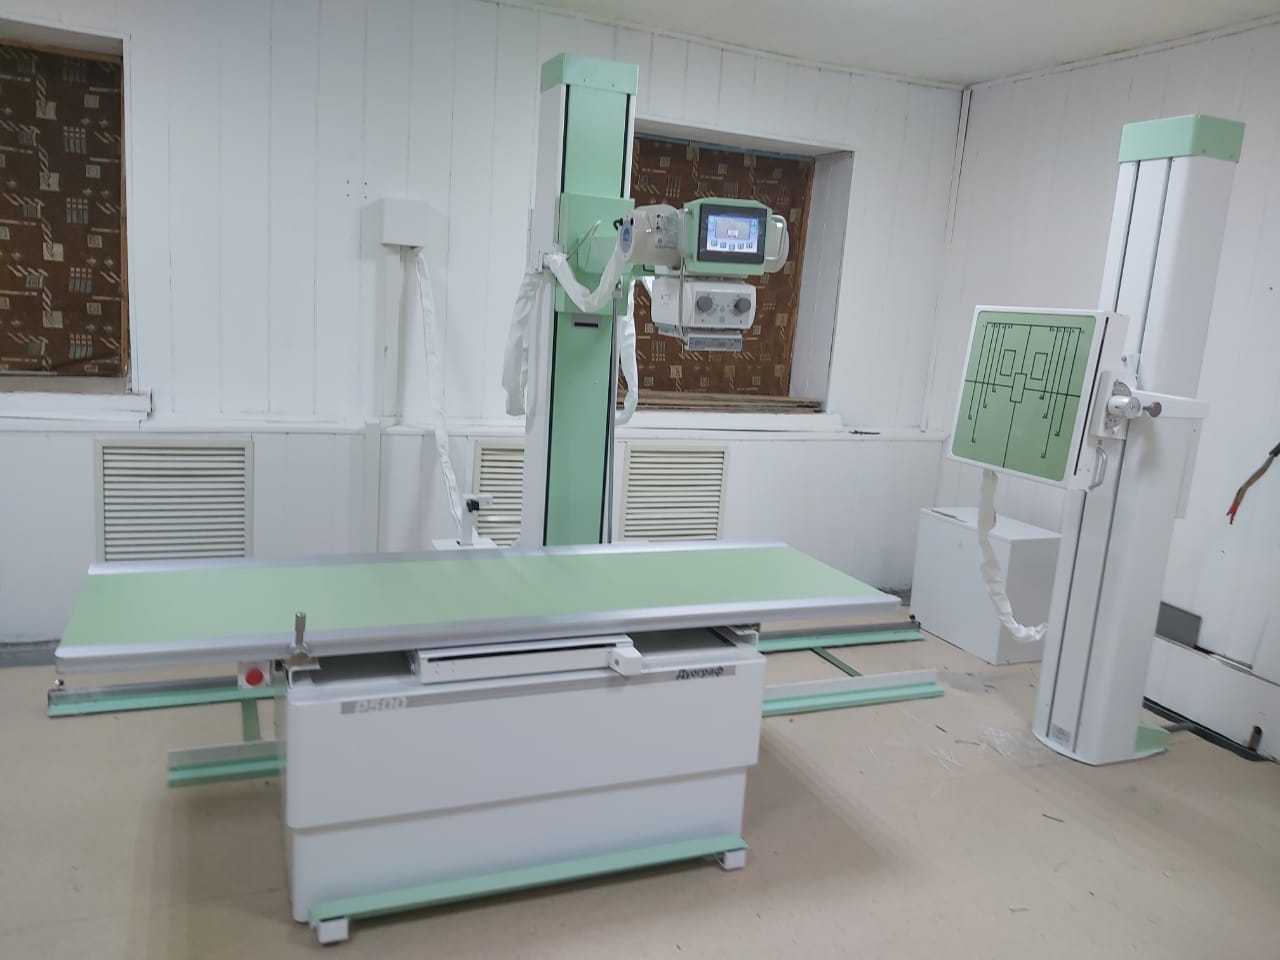 Новый рентгеновский аппарат поступил в ЦРБ Усть-Янского района Якутии